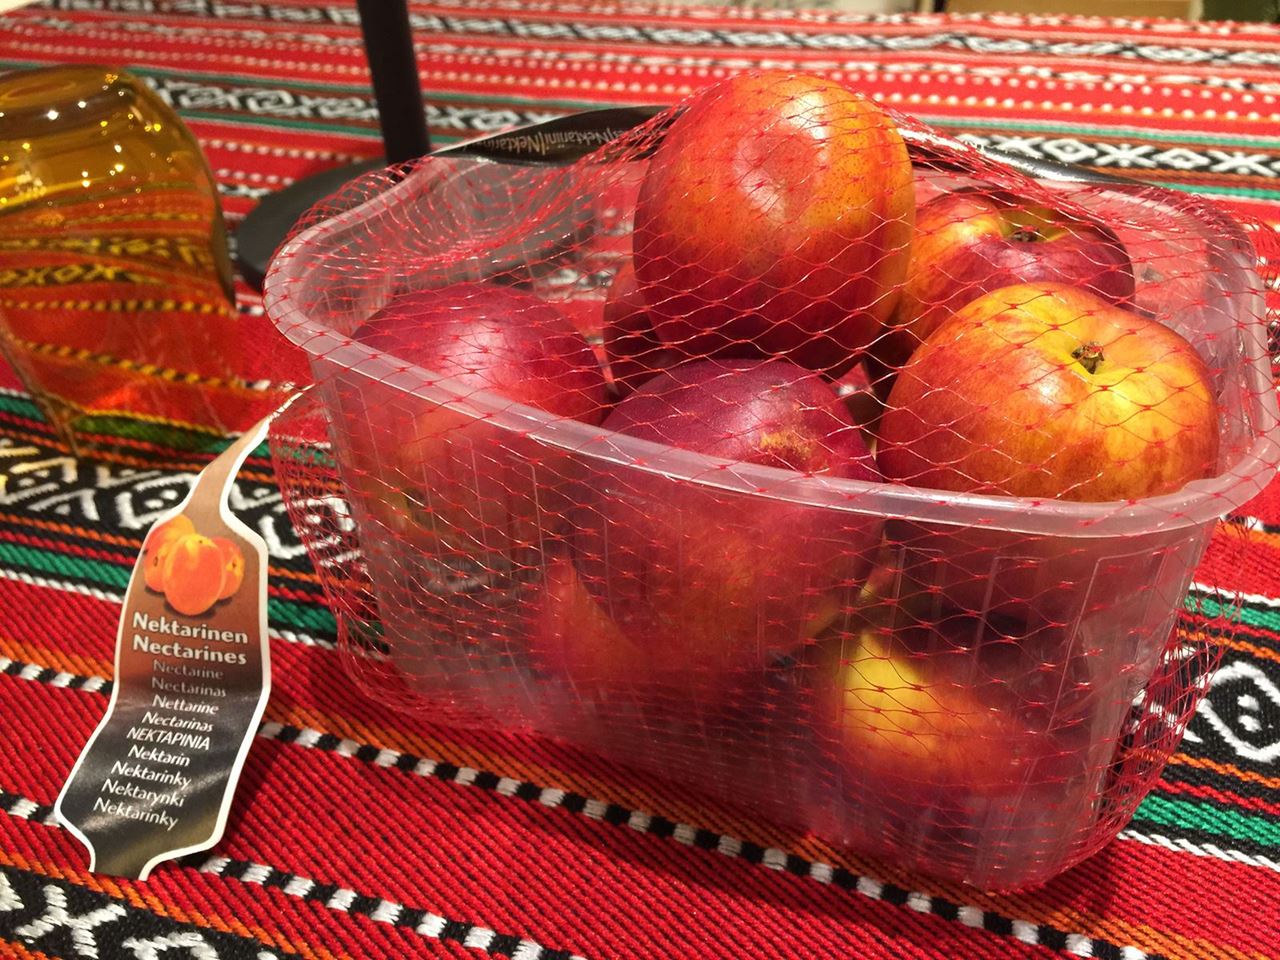 "Peach Garden" ... برنامج أوروبي للترويج لمنتجات الخوخ اليوناني في الكويت